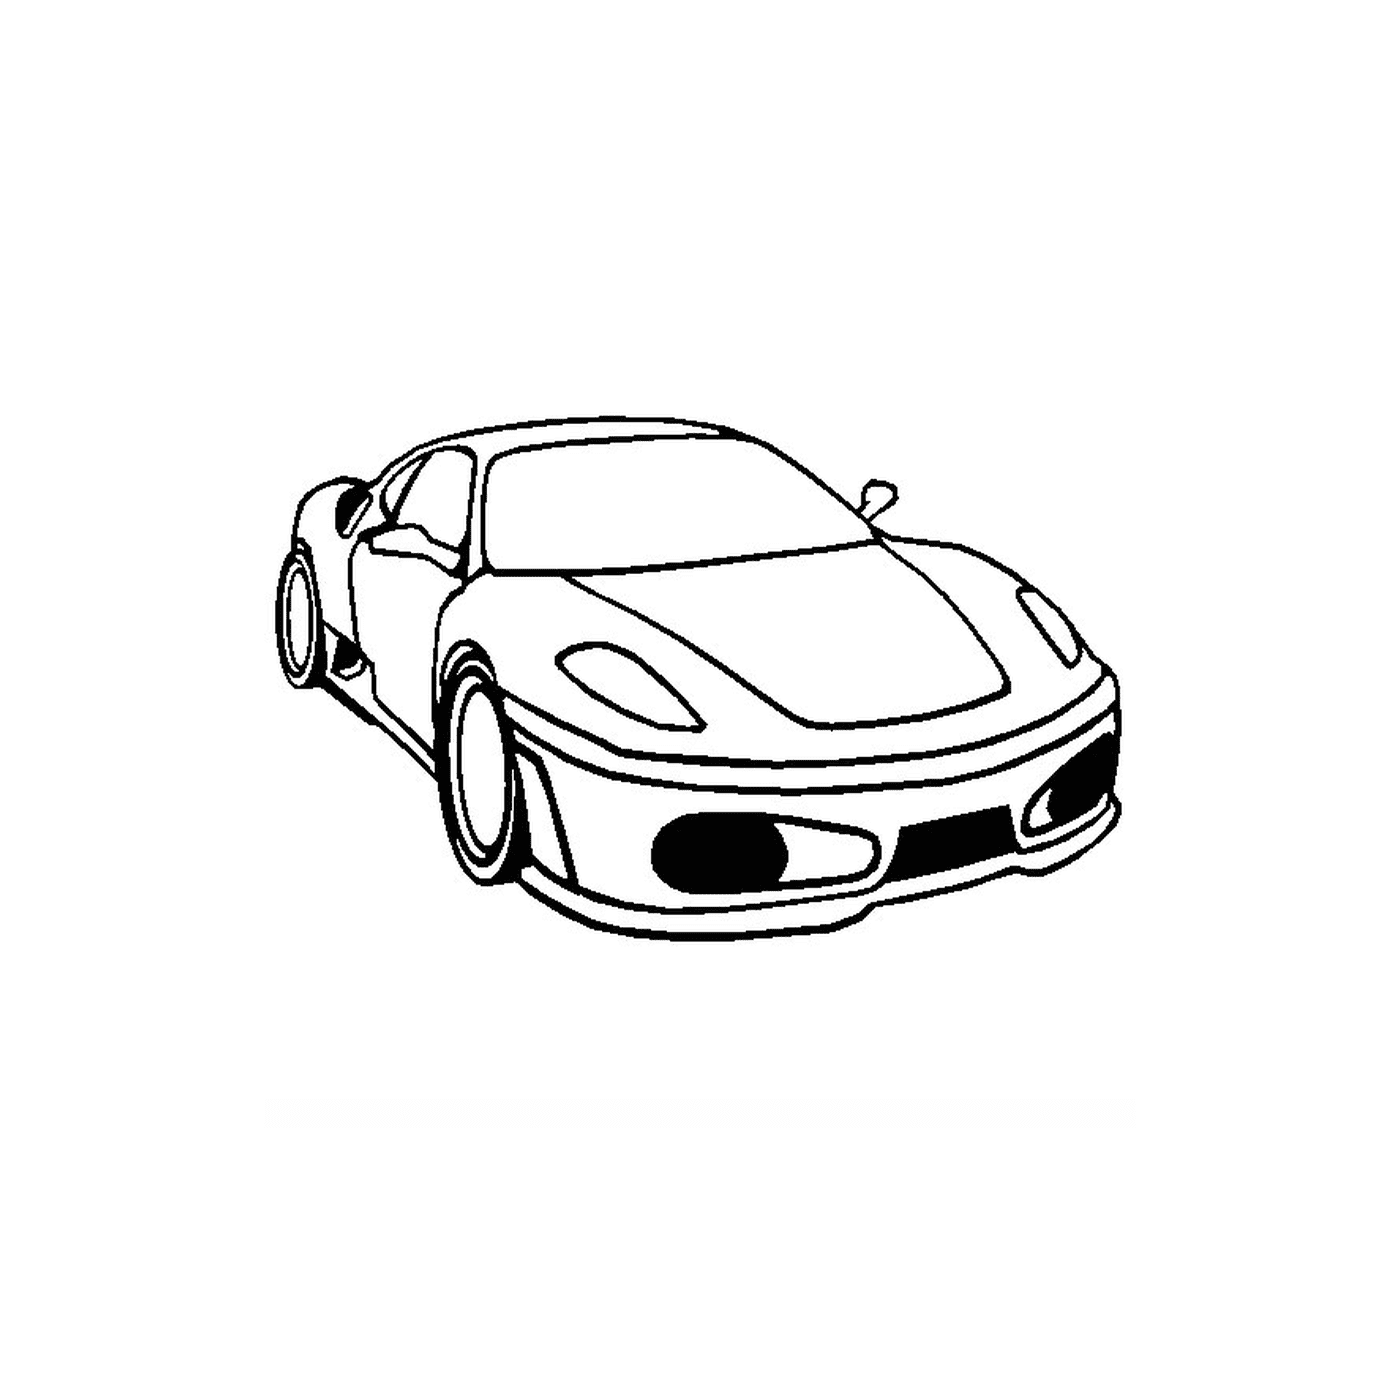  Ferrari carro f430 